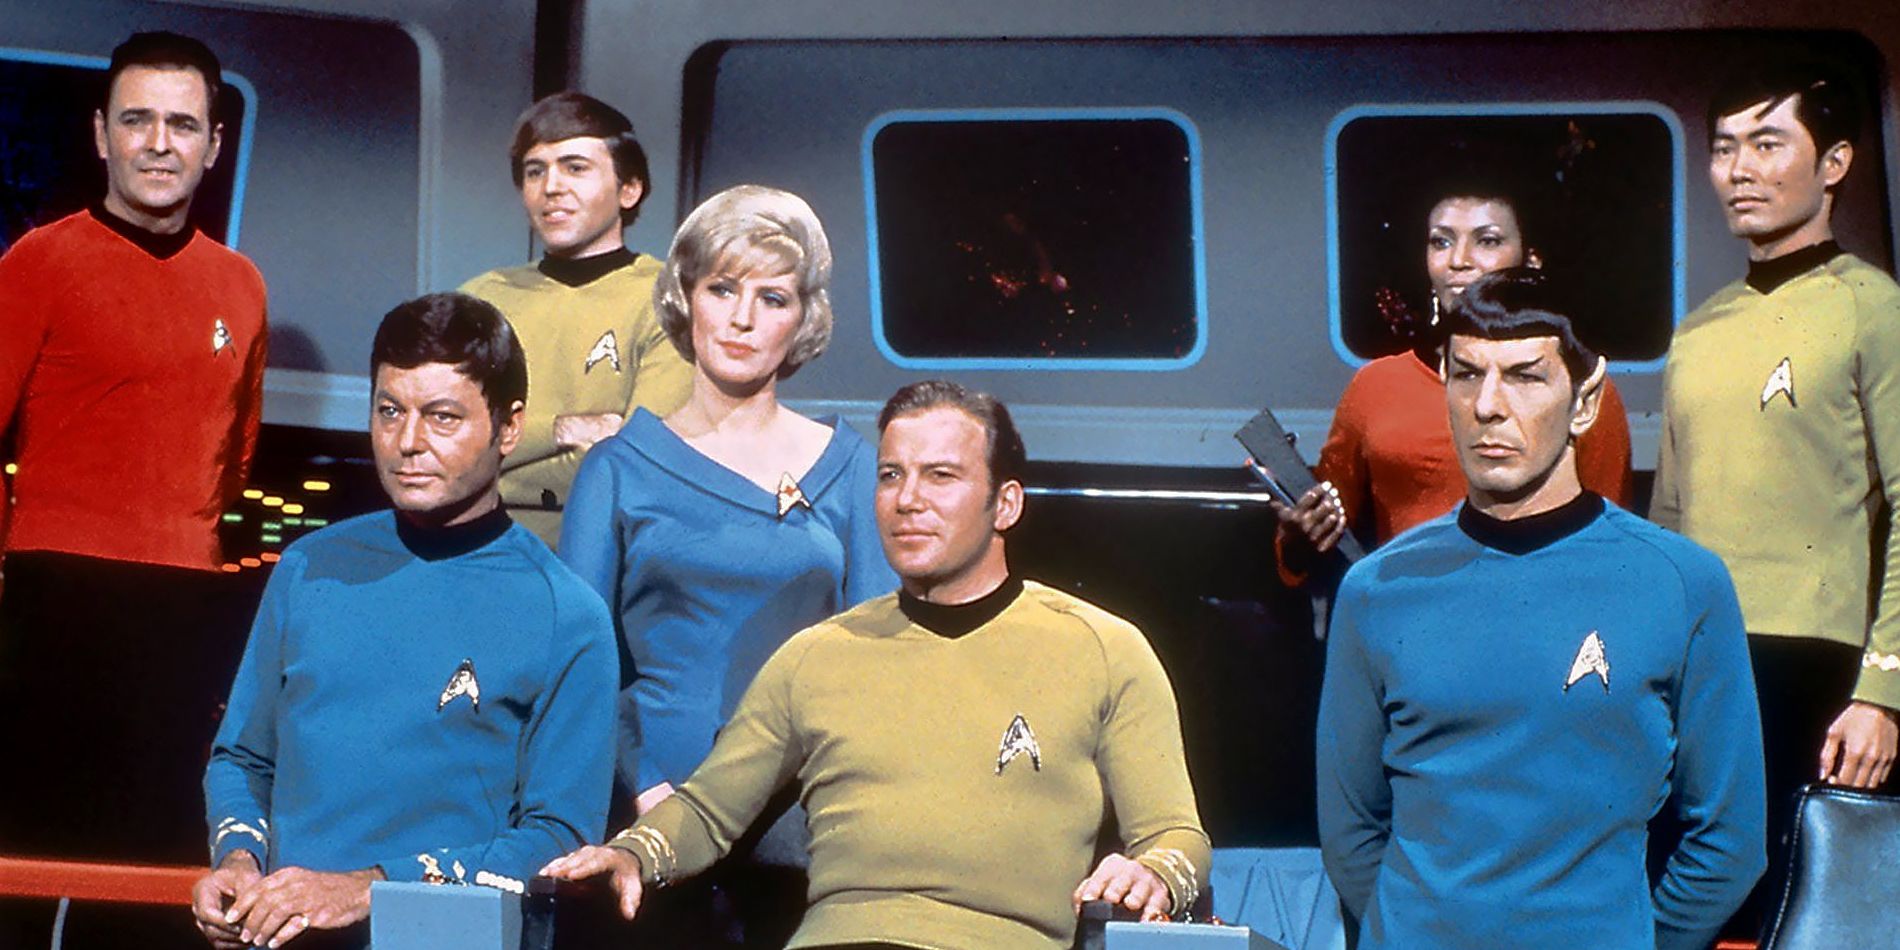 the cast of the original Star Trek